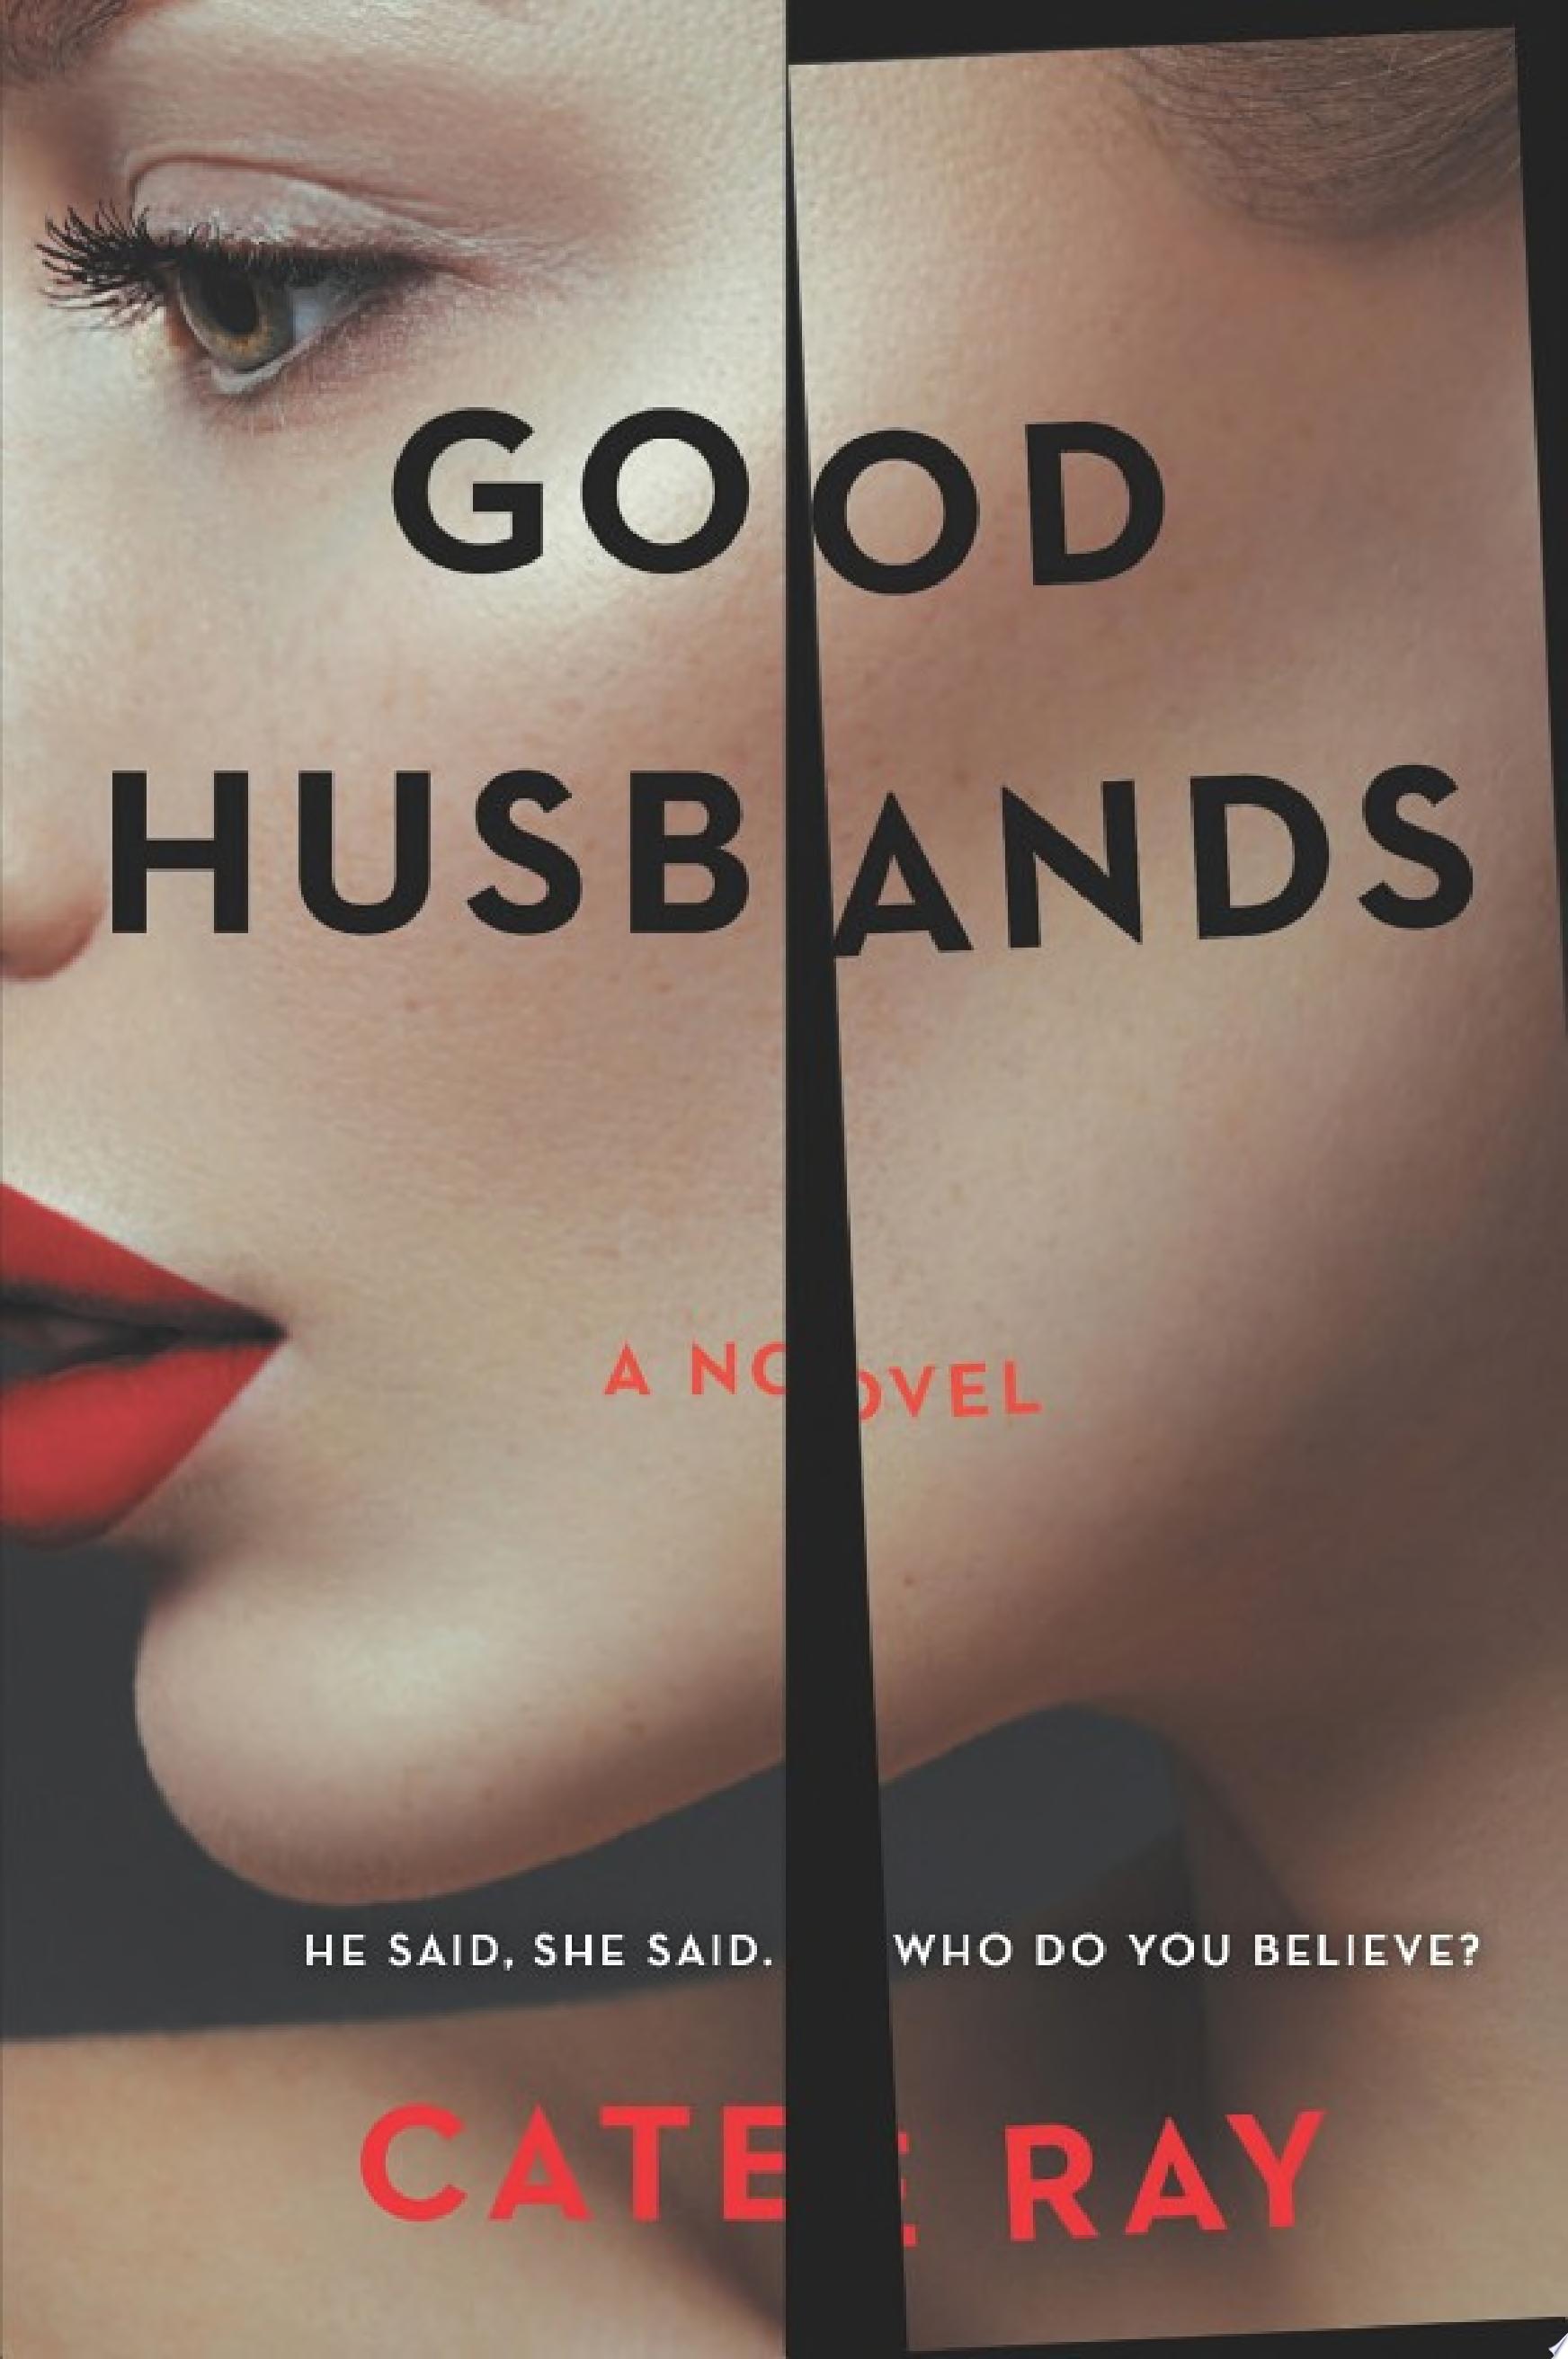 Image for "Good Husbands"